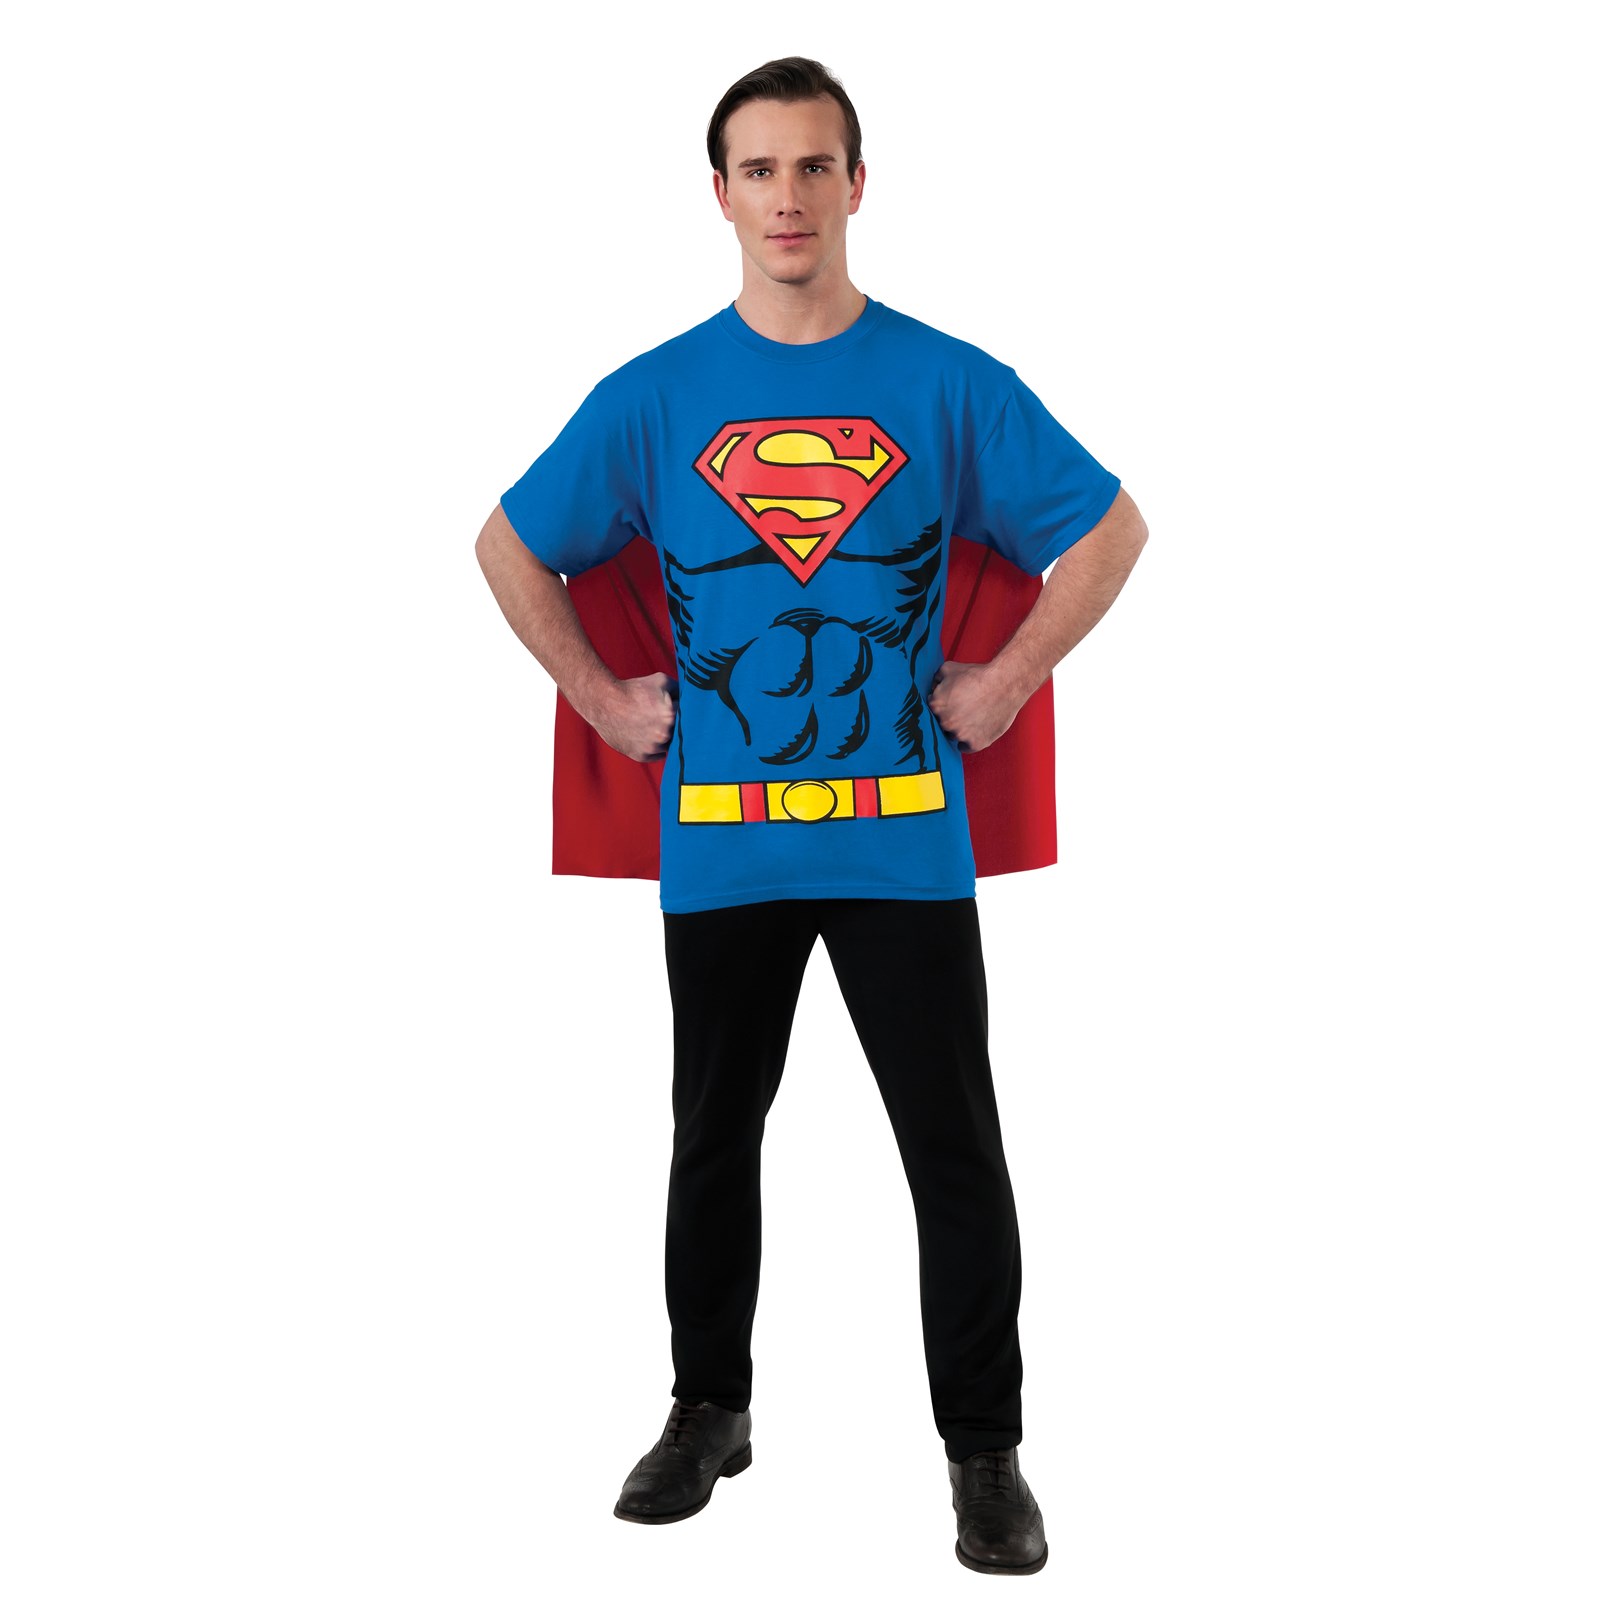 DC Comics Superman T-Shirt Adult Costume Kit